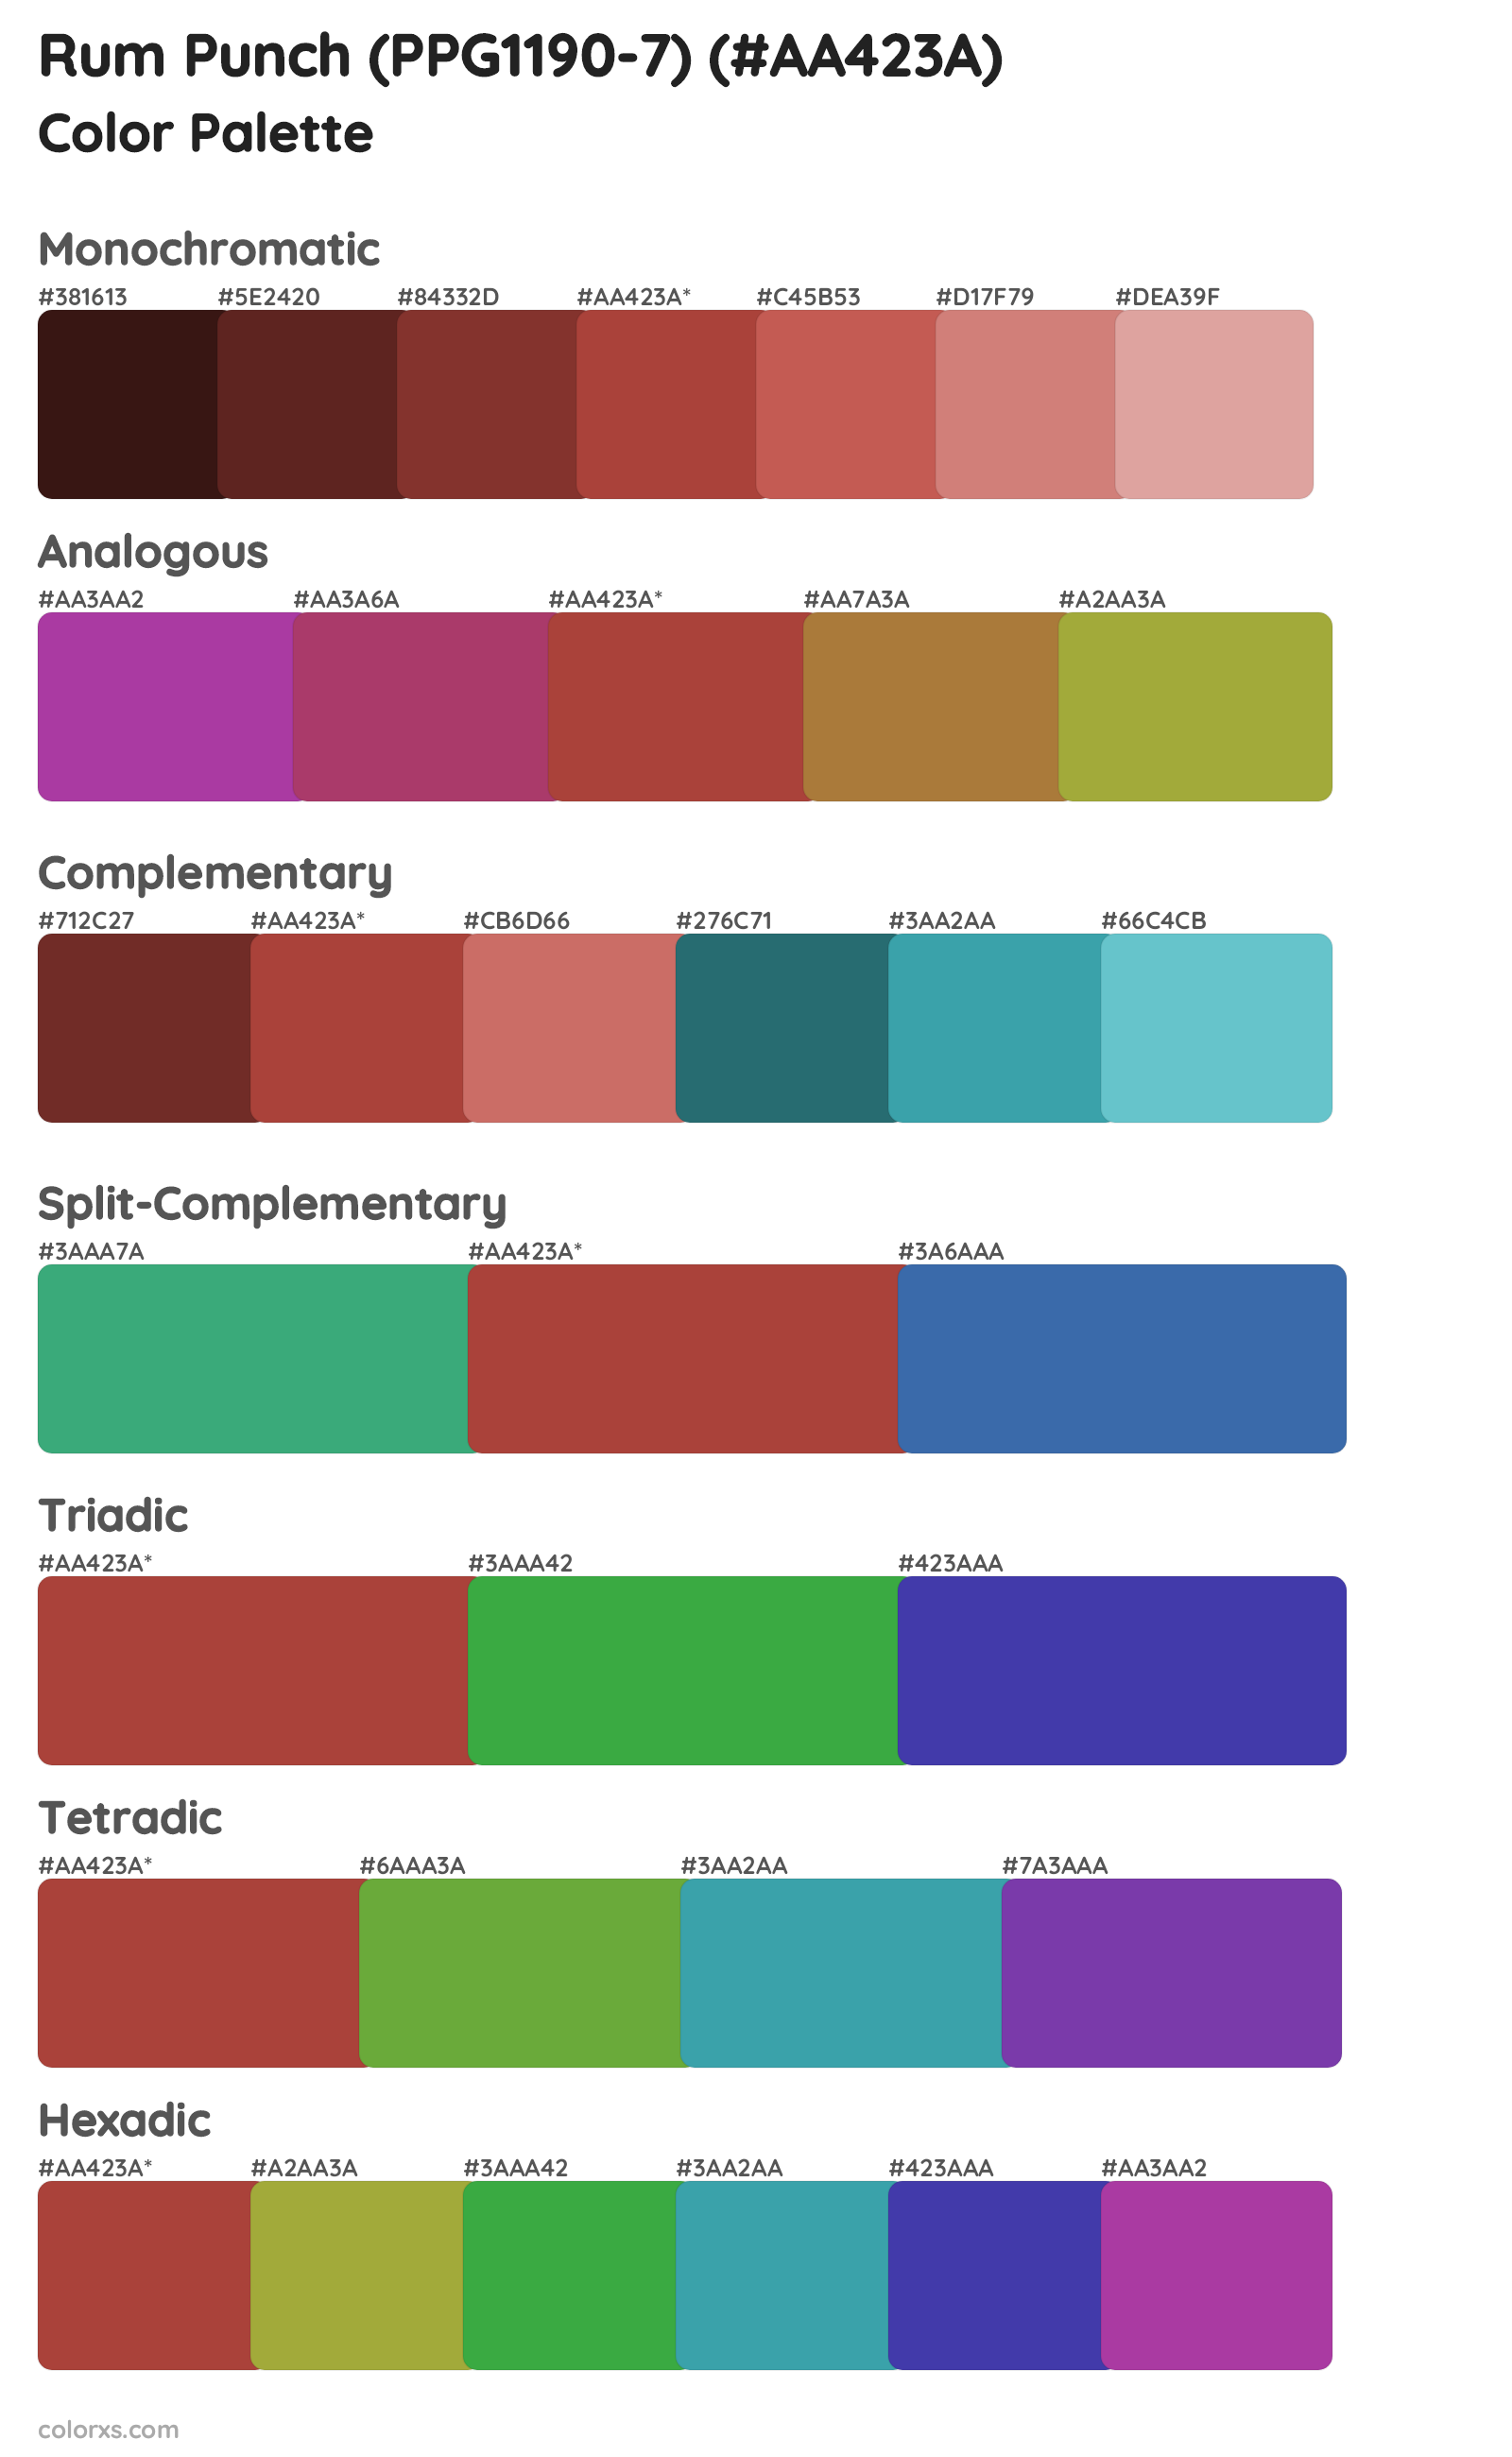 Rum Punch (PPG1190-7) Color Scheme Palettes